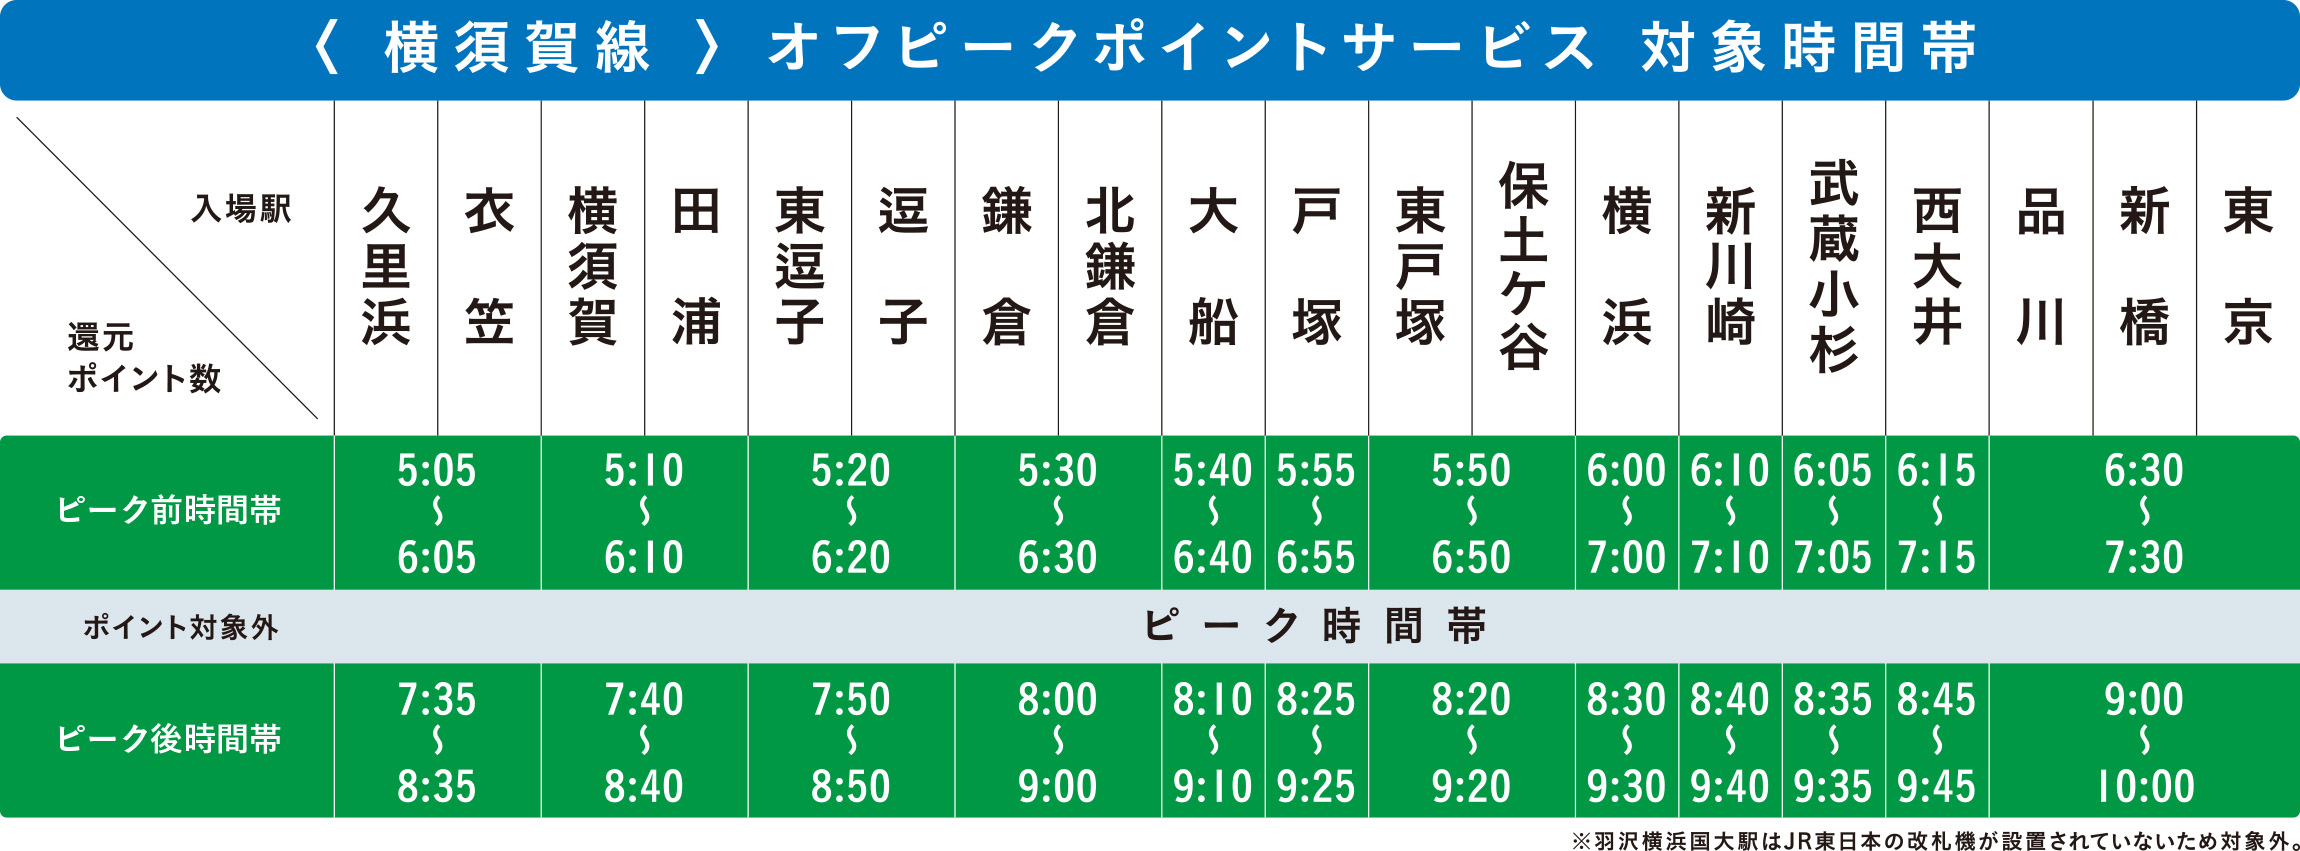 横須賀線オフピークポイントサービス対象時間帯